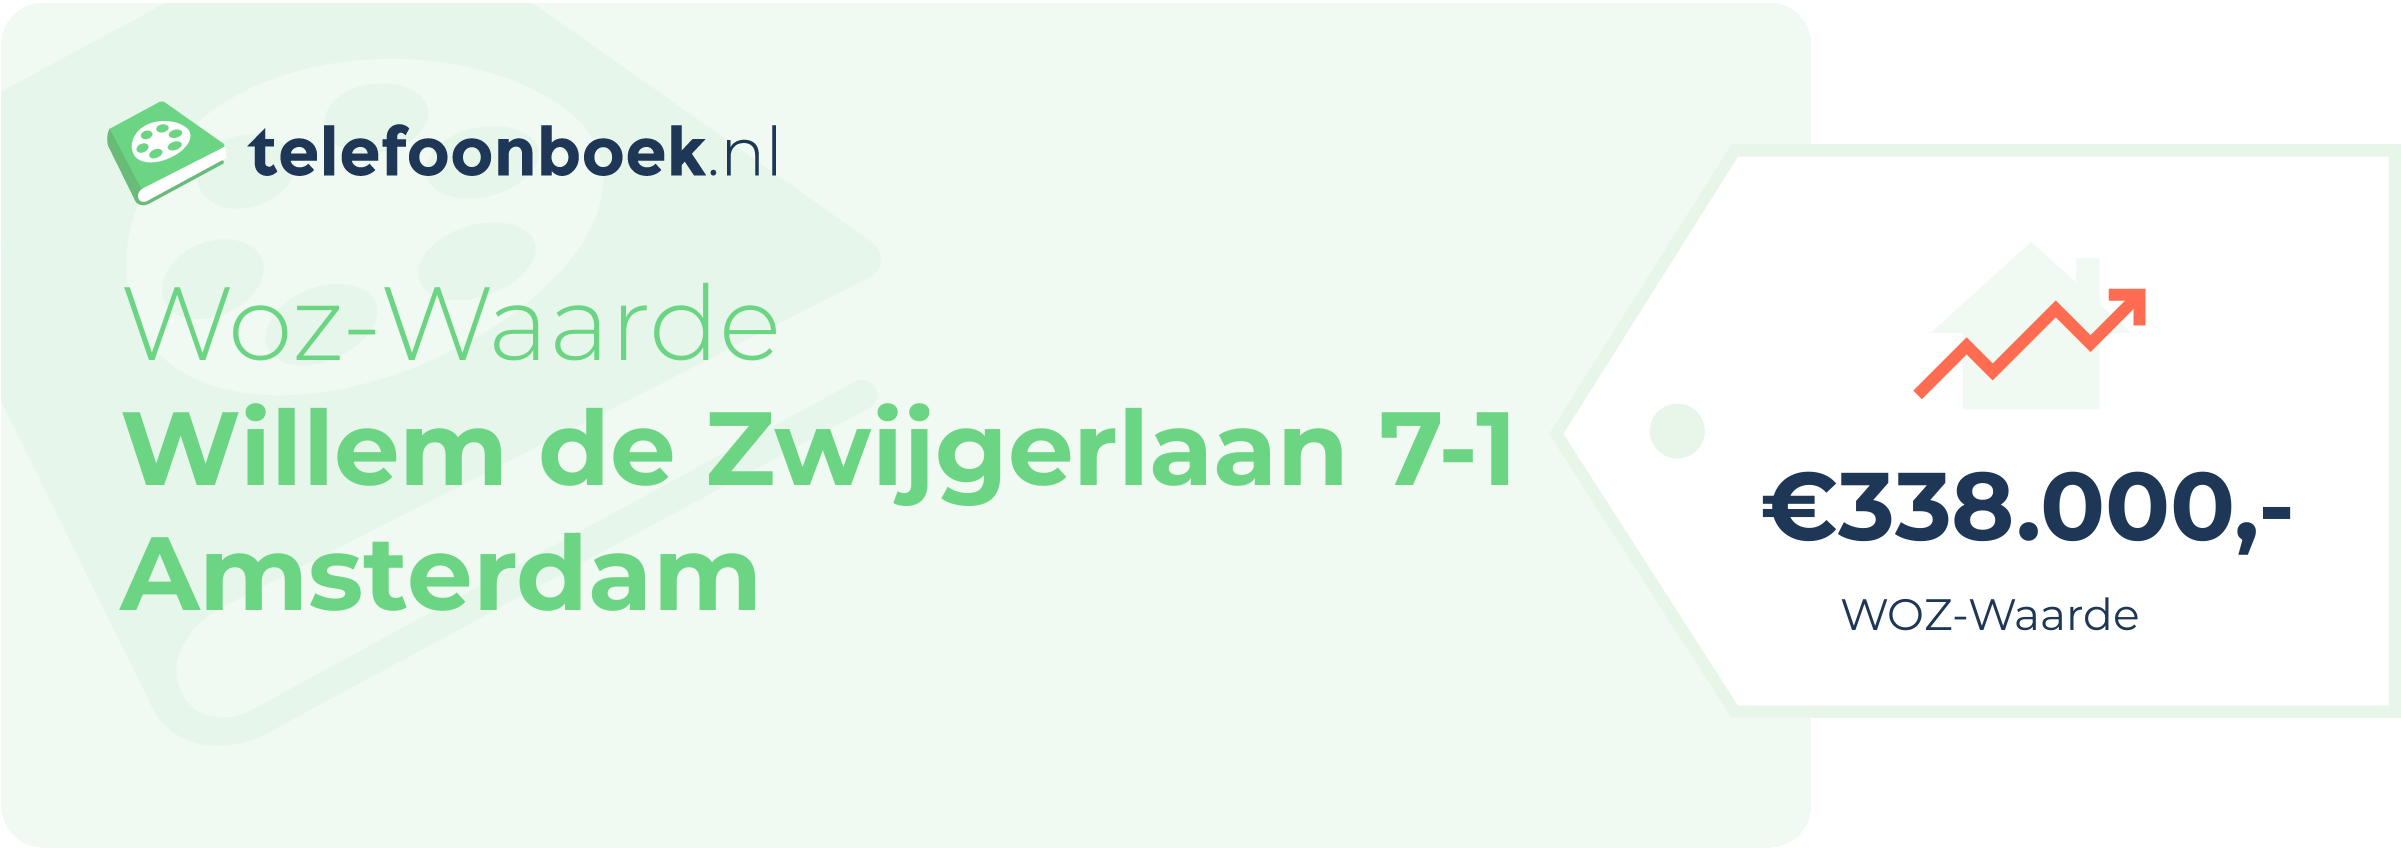 WOZ-waarde Willem De Zwijgerlaan 7-1 Amsterdam